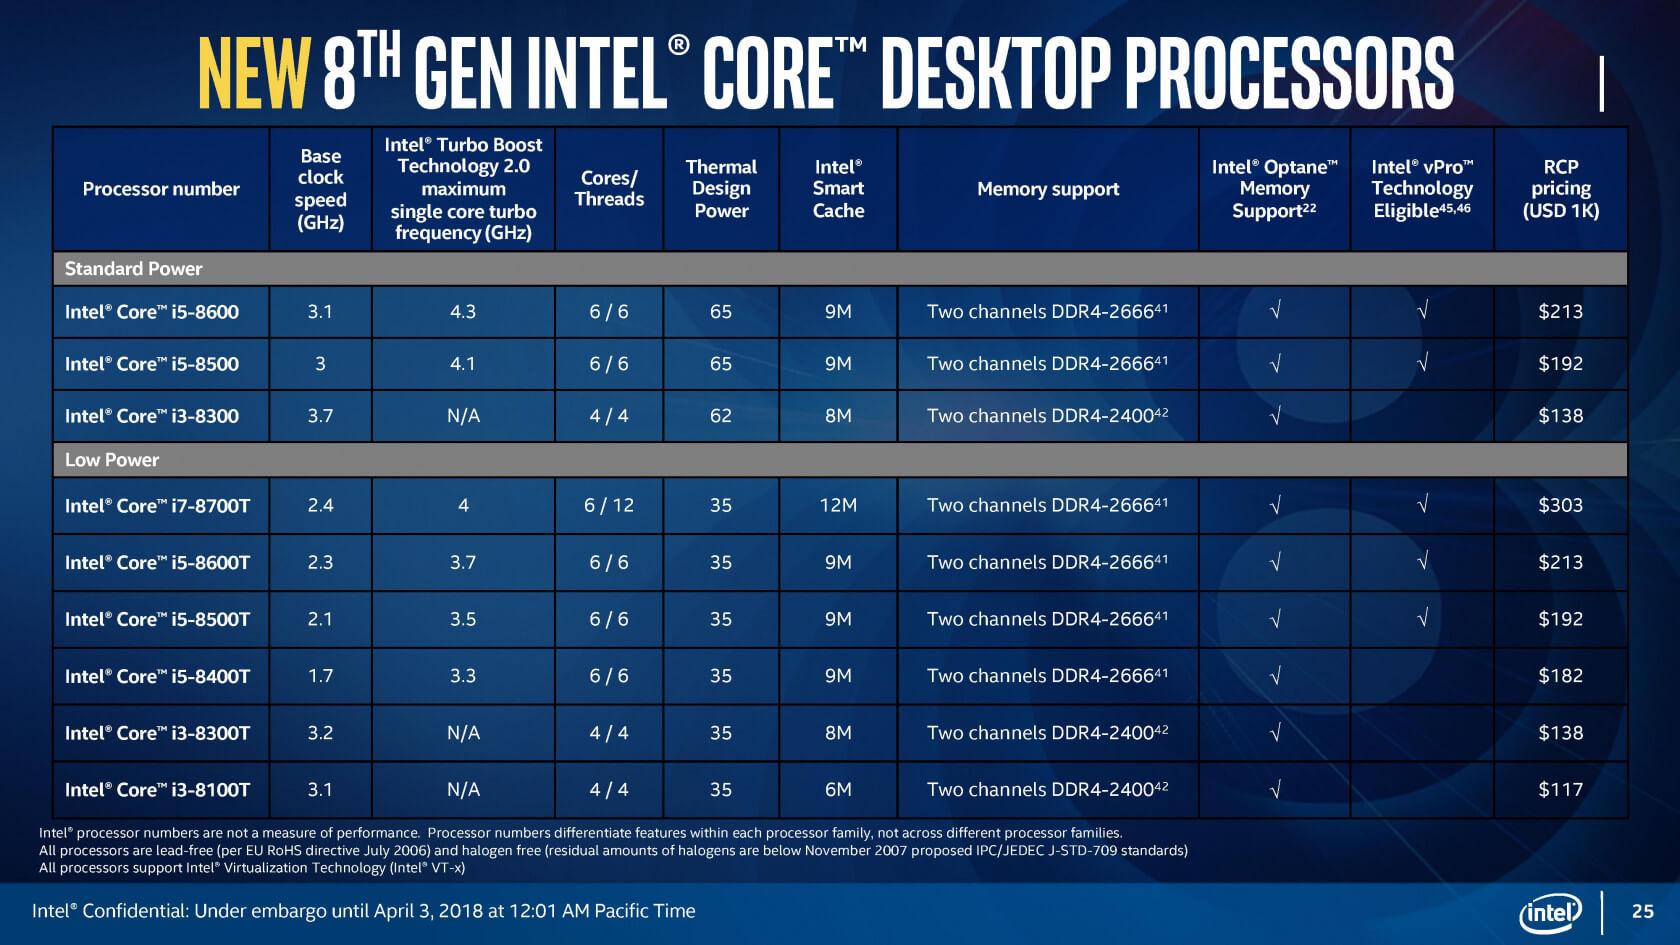 Intel altı çekirdekli Core i9 işlemcisini dizüstü bilgisayarlara taşıdı